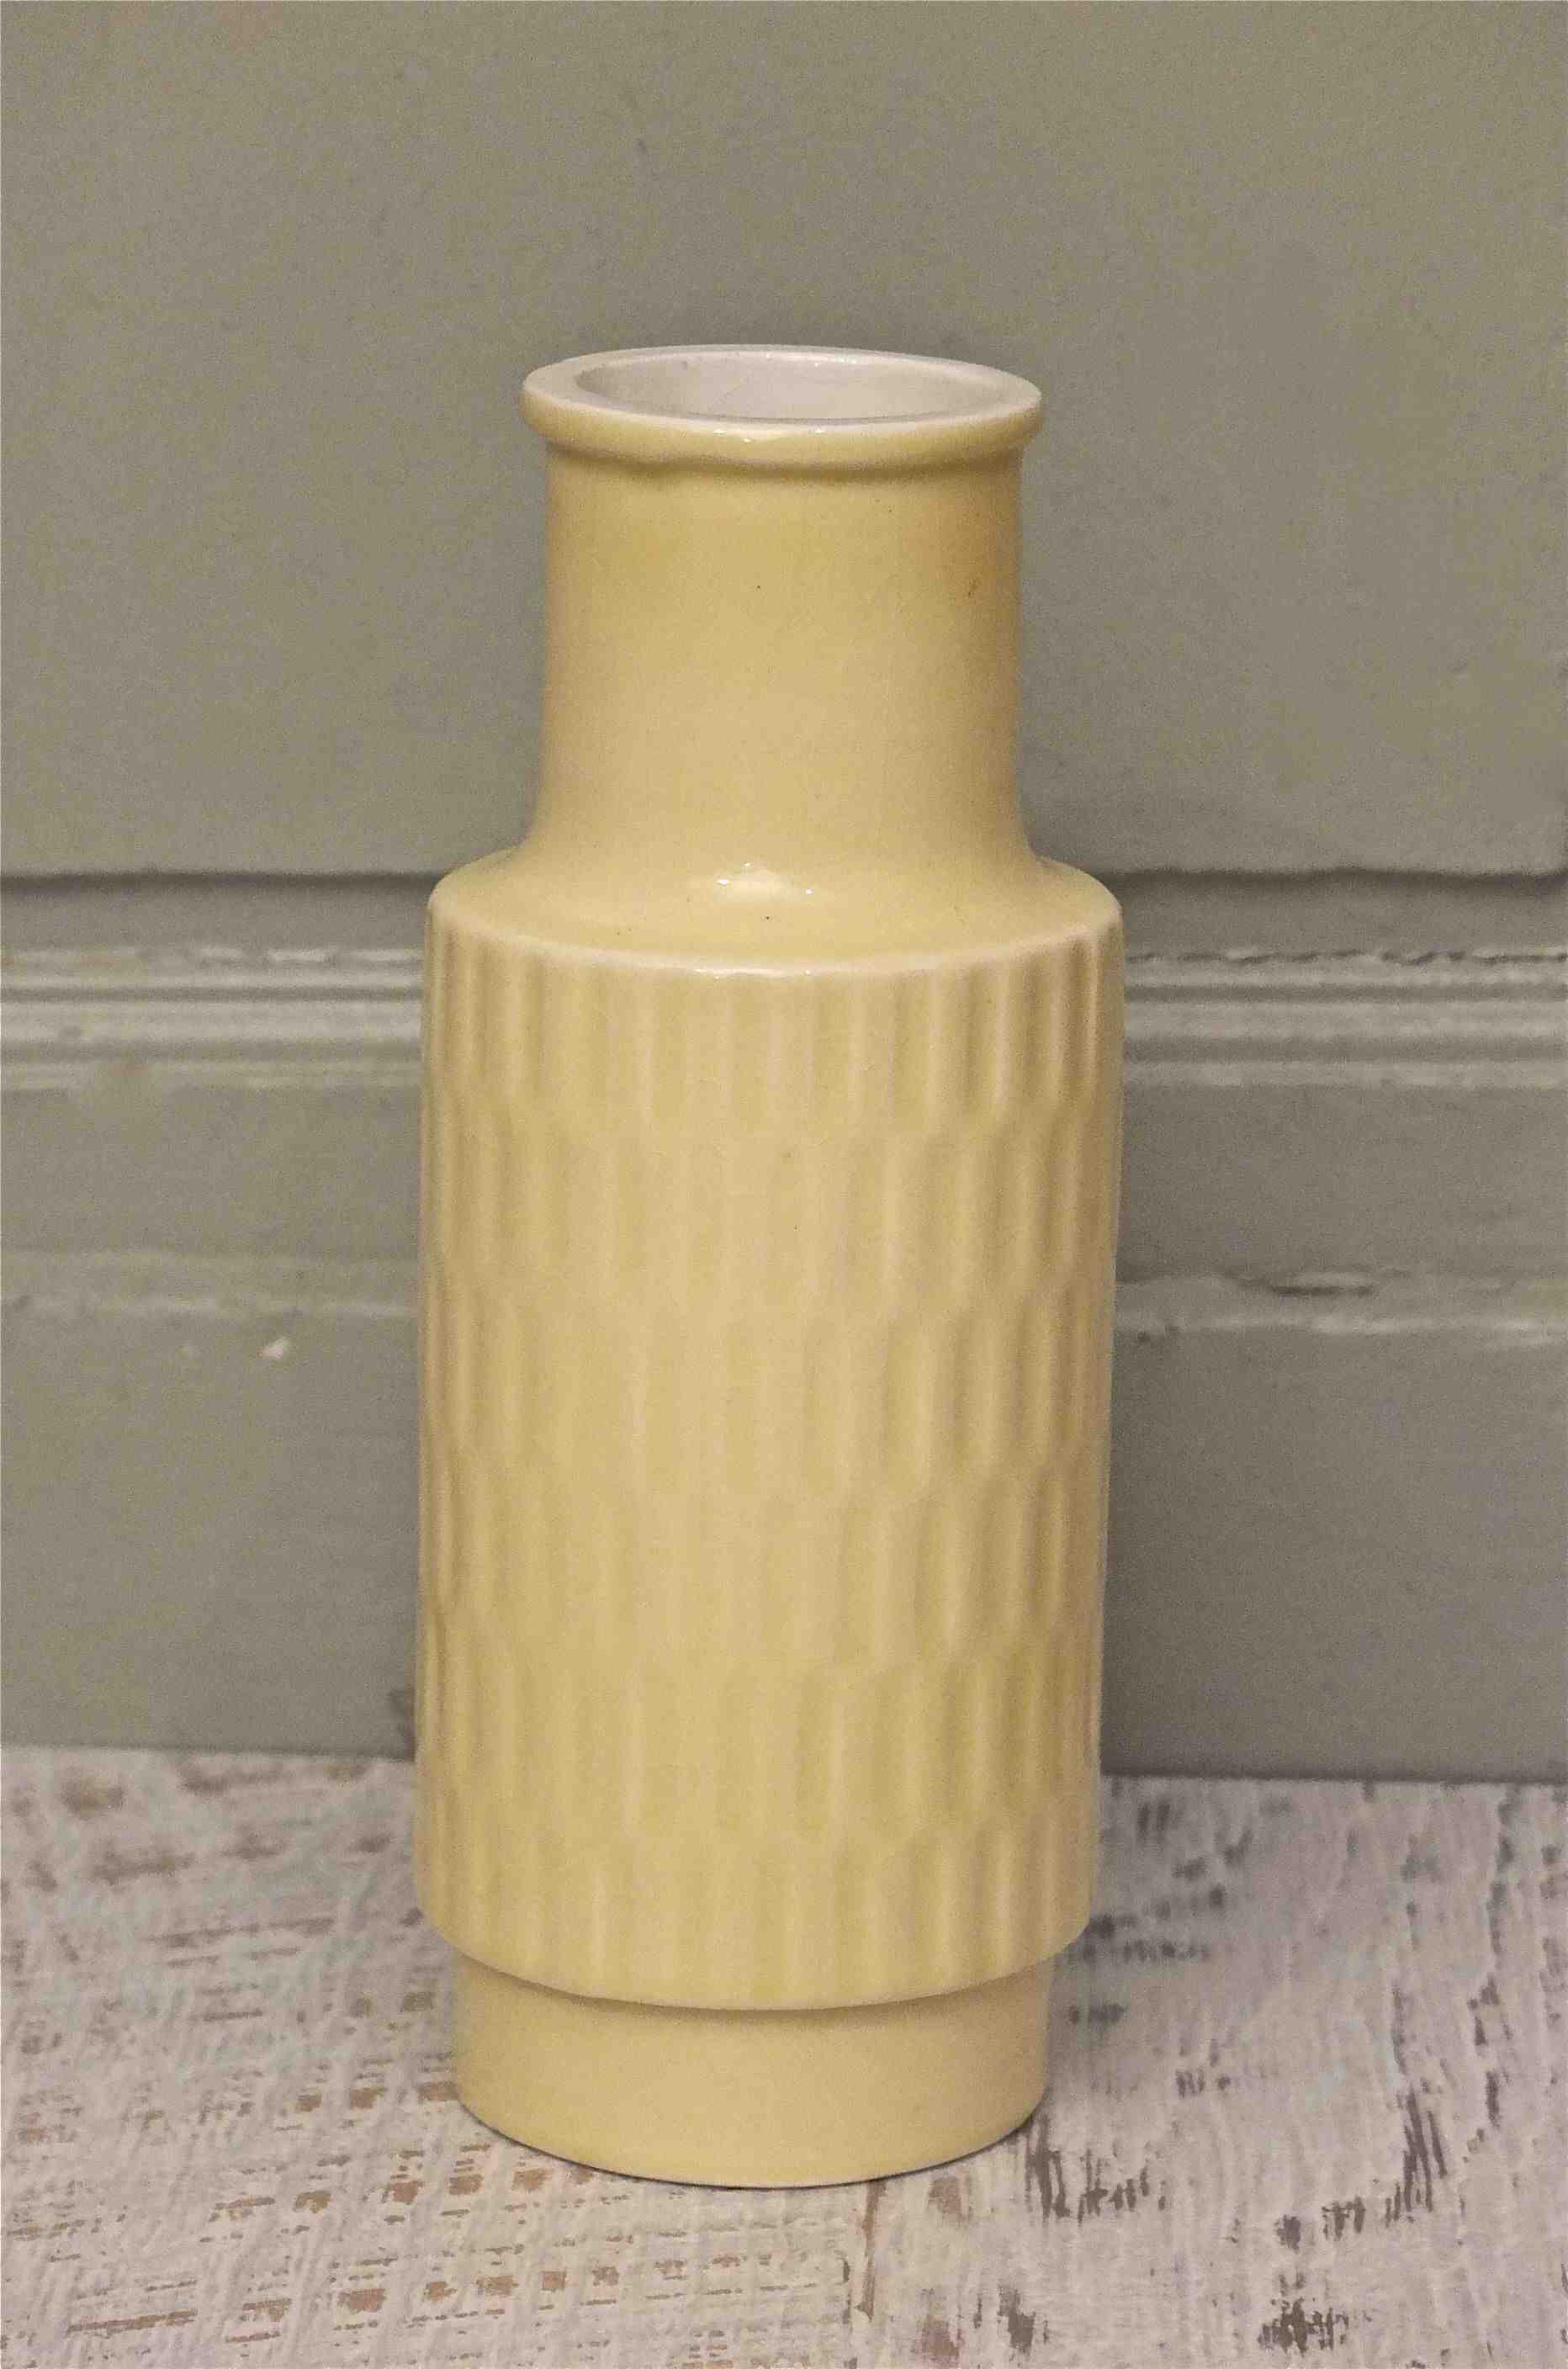 Slavia Vintage vase en porcelaine des annees 60 tchecoslovaque "Vanilla"